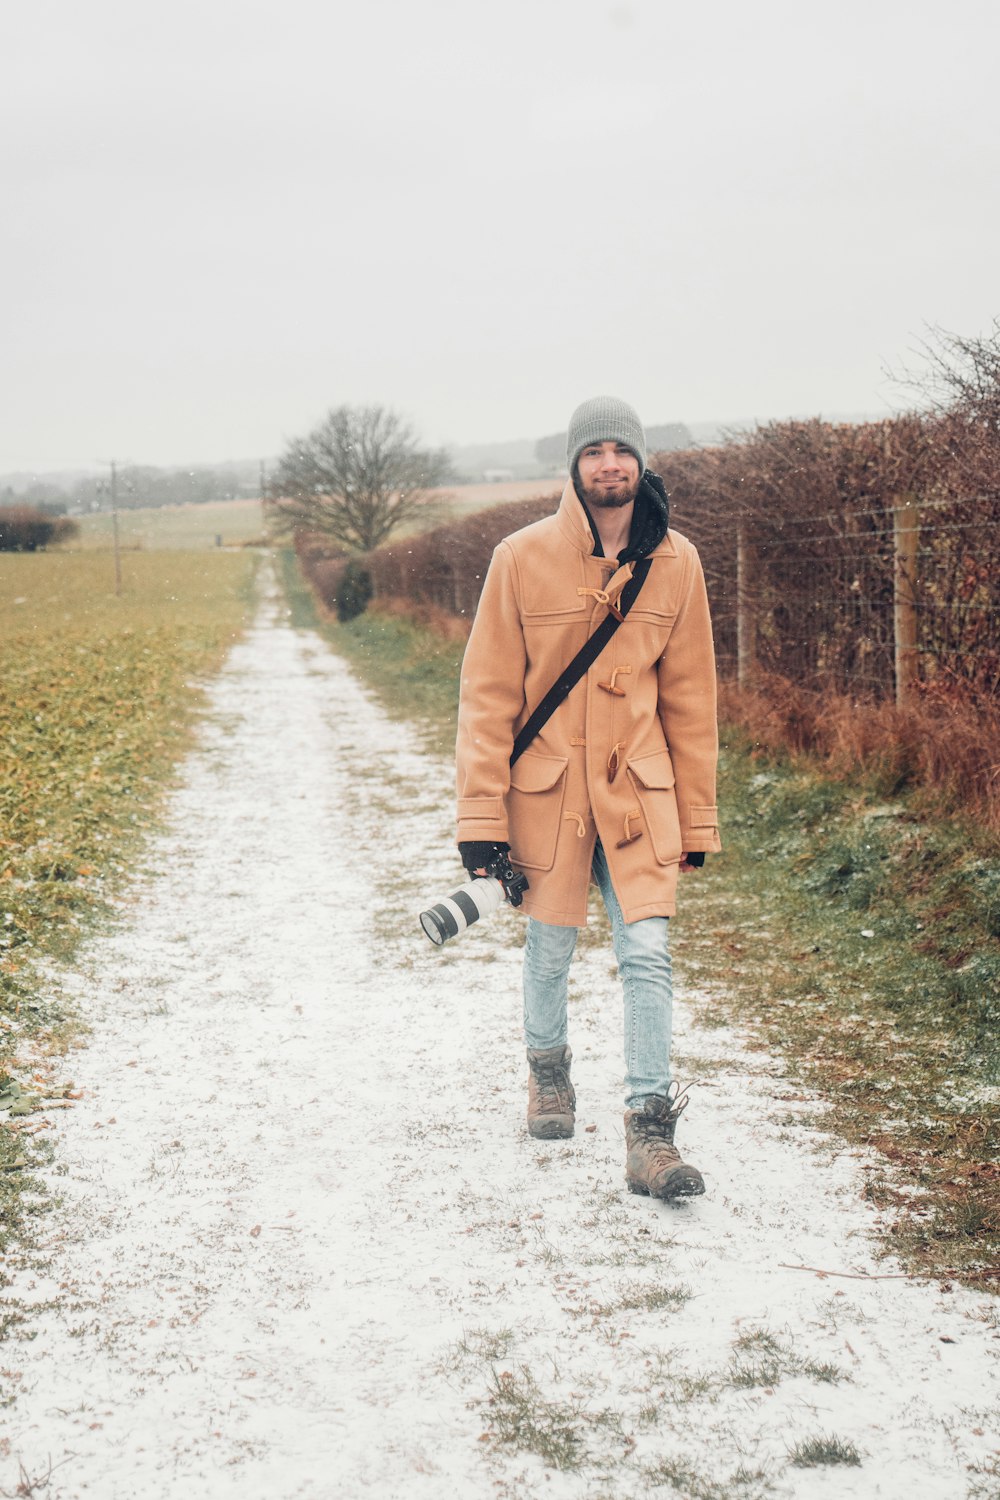 Mann in braunem Mantel und schwarzer Hose geht tagsüber auf schneebedecktem Boden spazieren